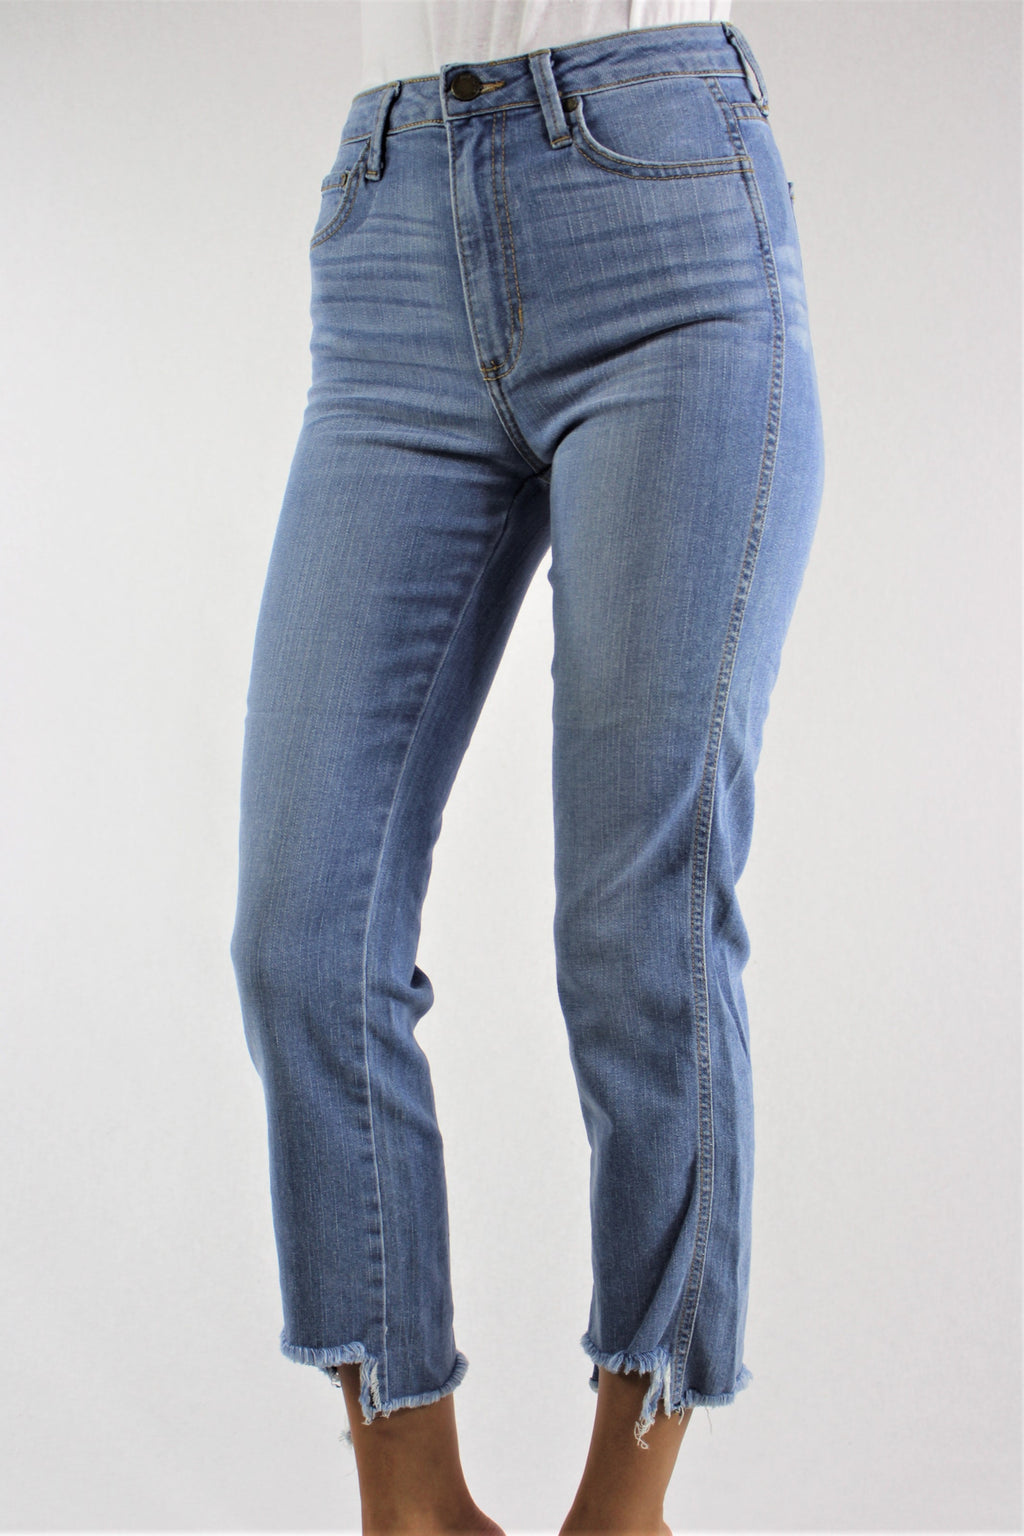 Wholesale DENIM Jeans | Wholesale Jeans for WOMEN – Good Stuff Apparel